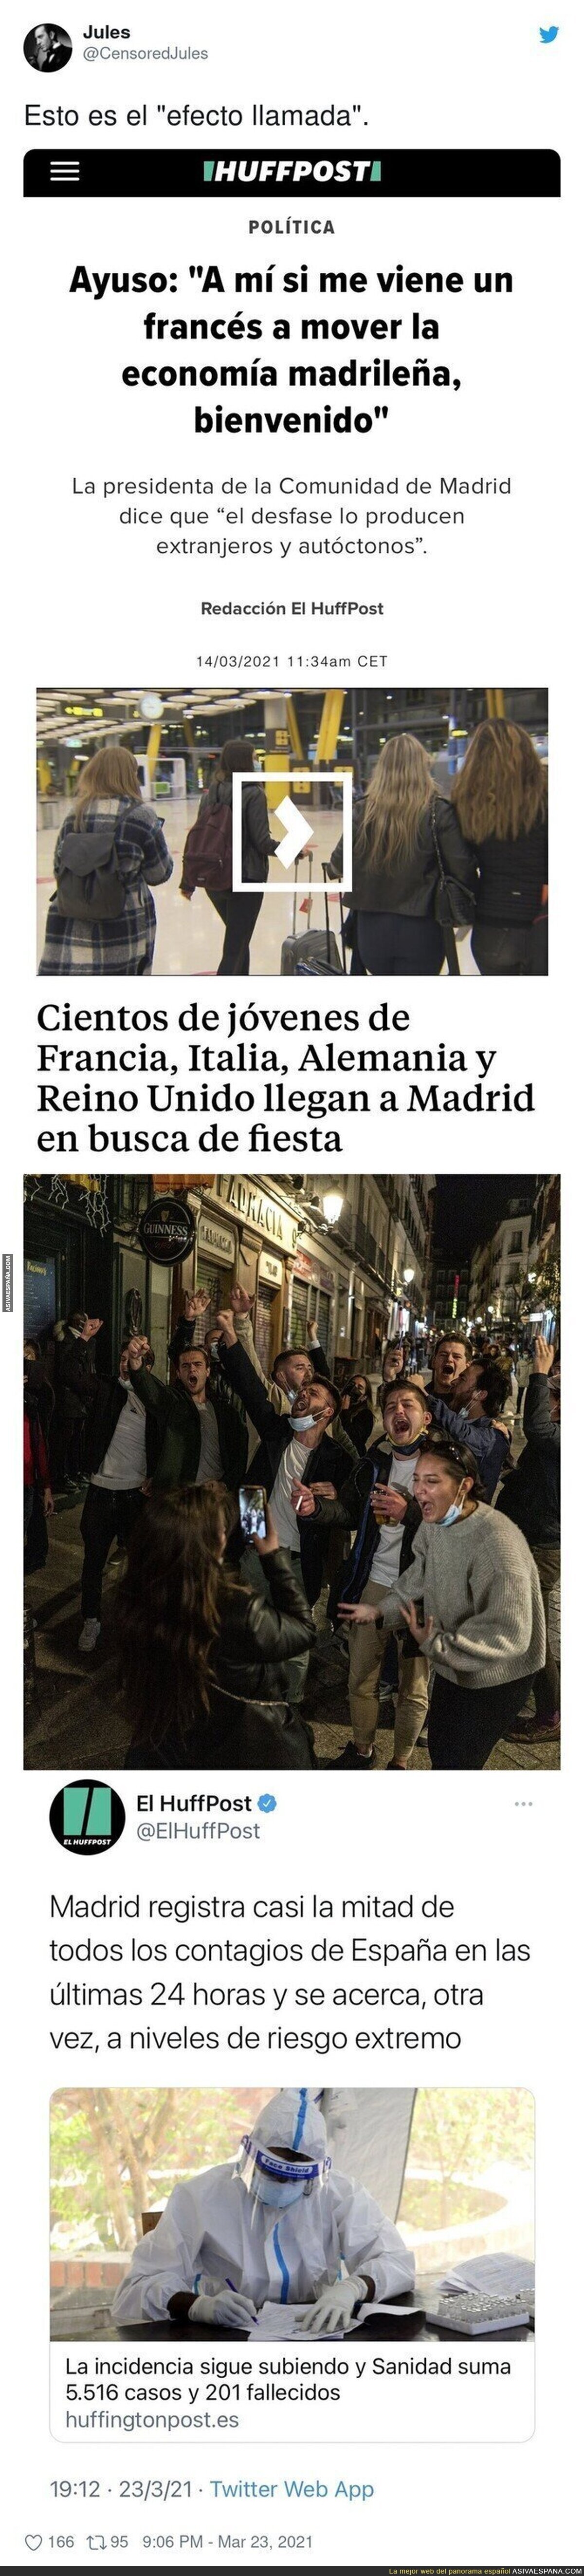 Así la ha liado Isabel Díaz Ayuso en Madrid trayendo turistas en plena pandemia